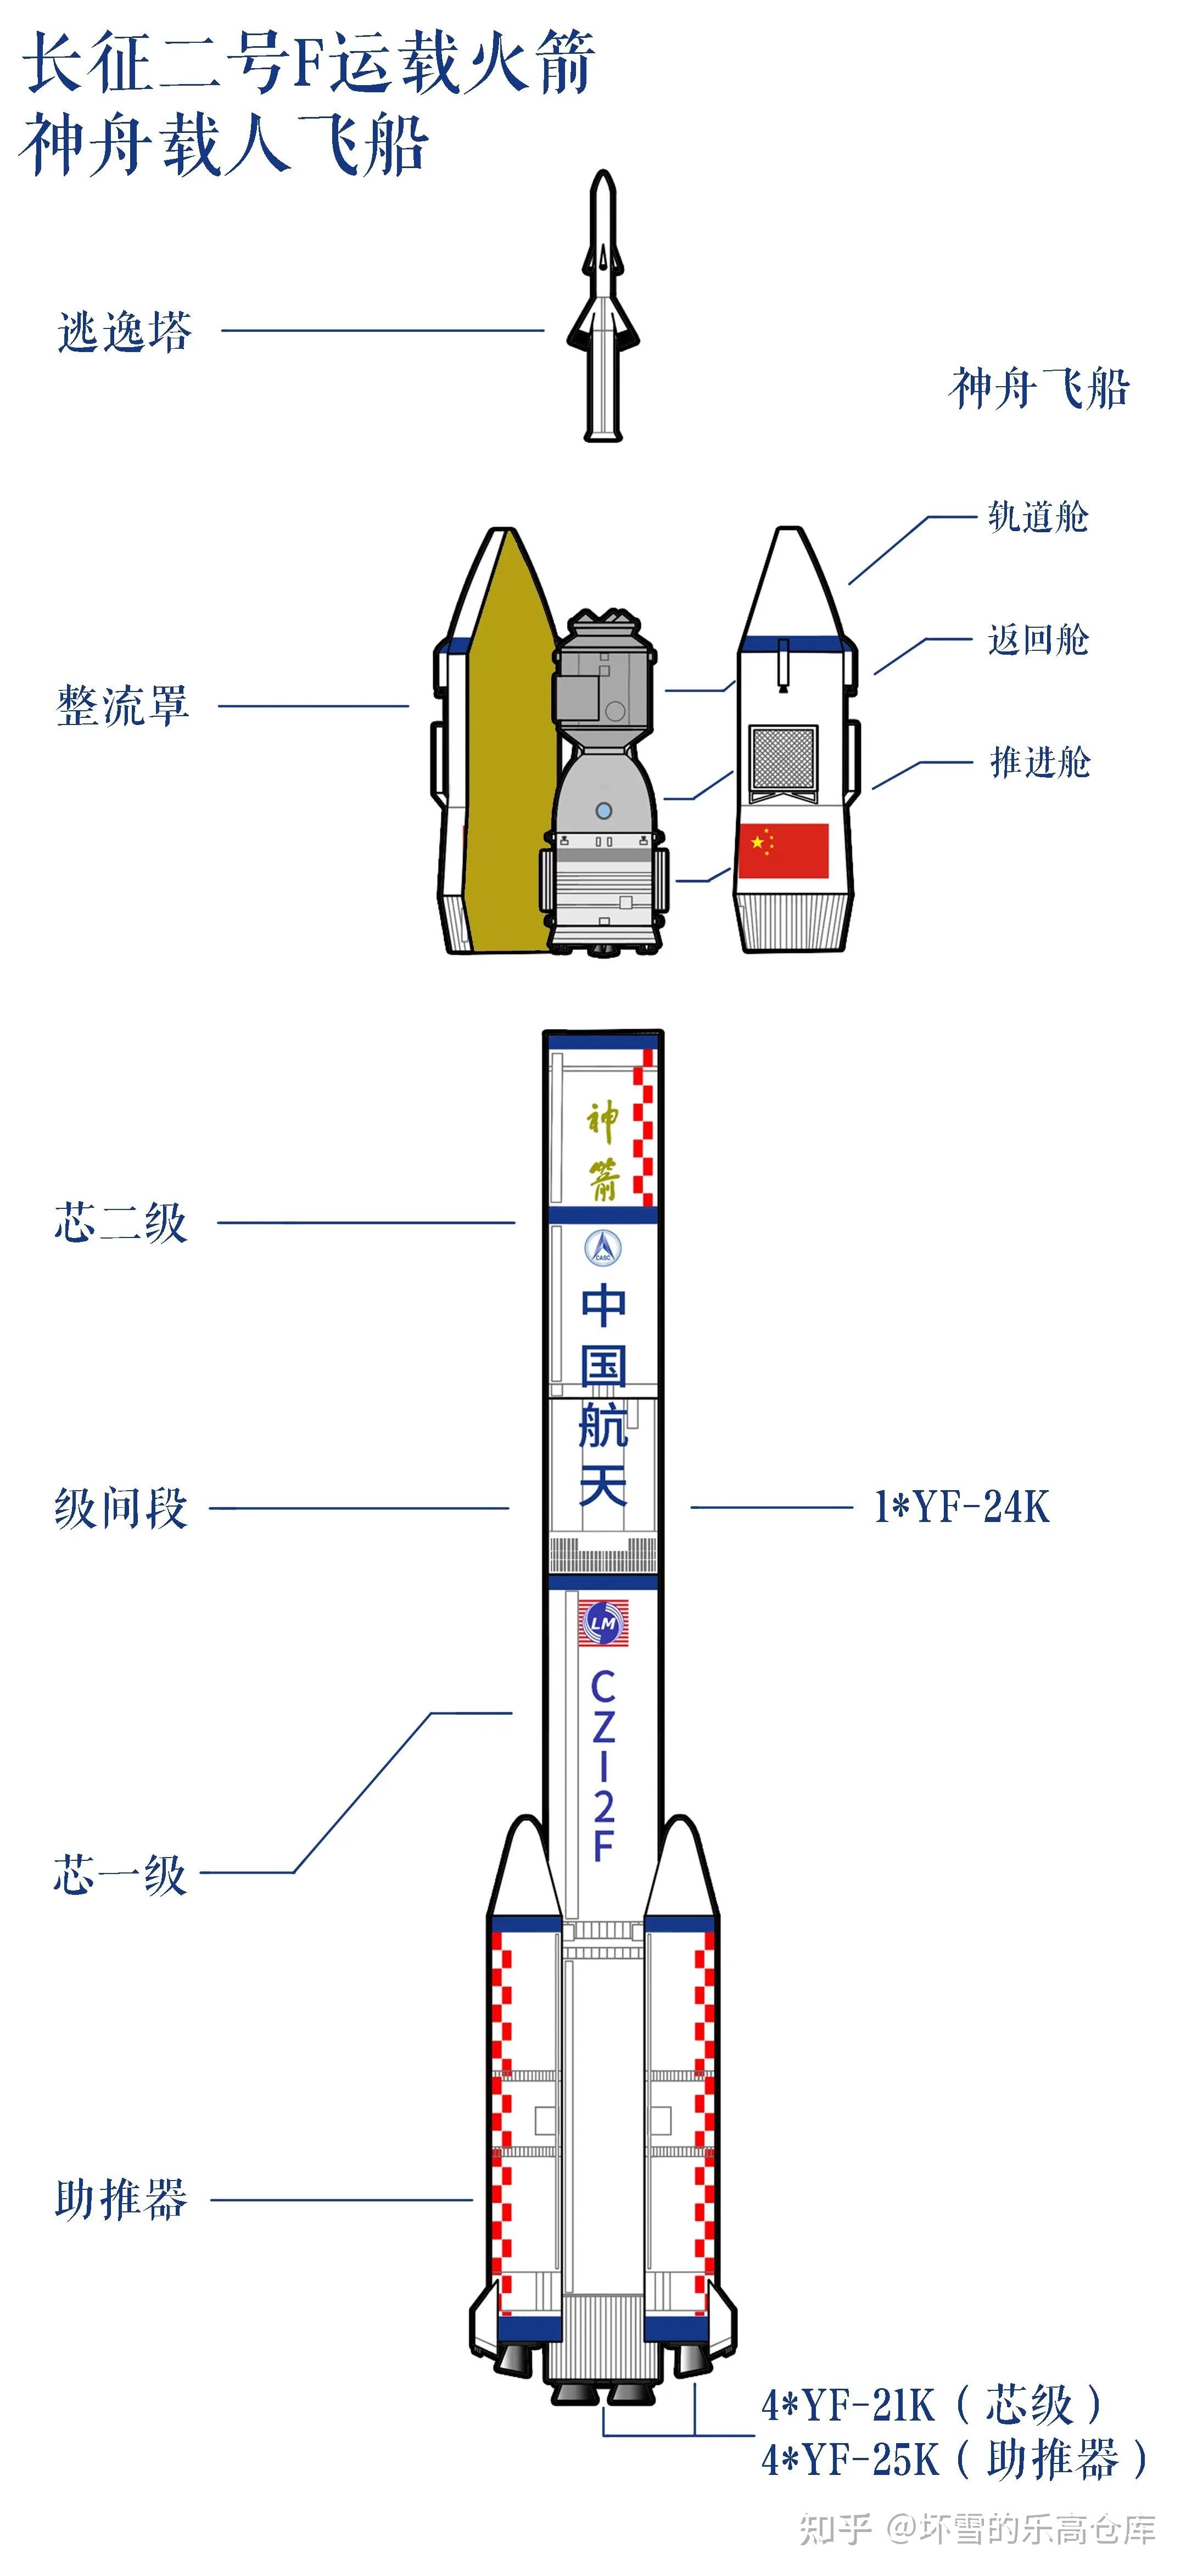 长征二号f运载火箭主要由四个助推器,一,二级燃料箱和氧化剂箱,上部